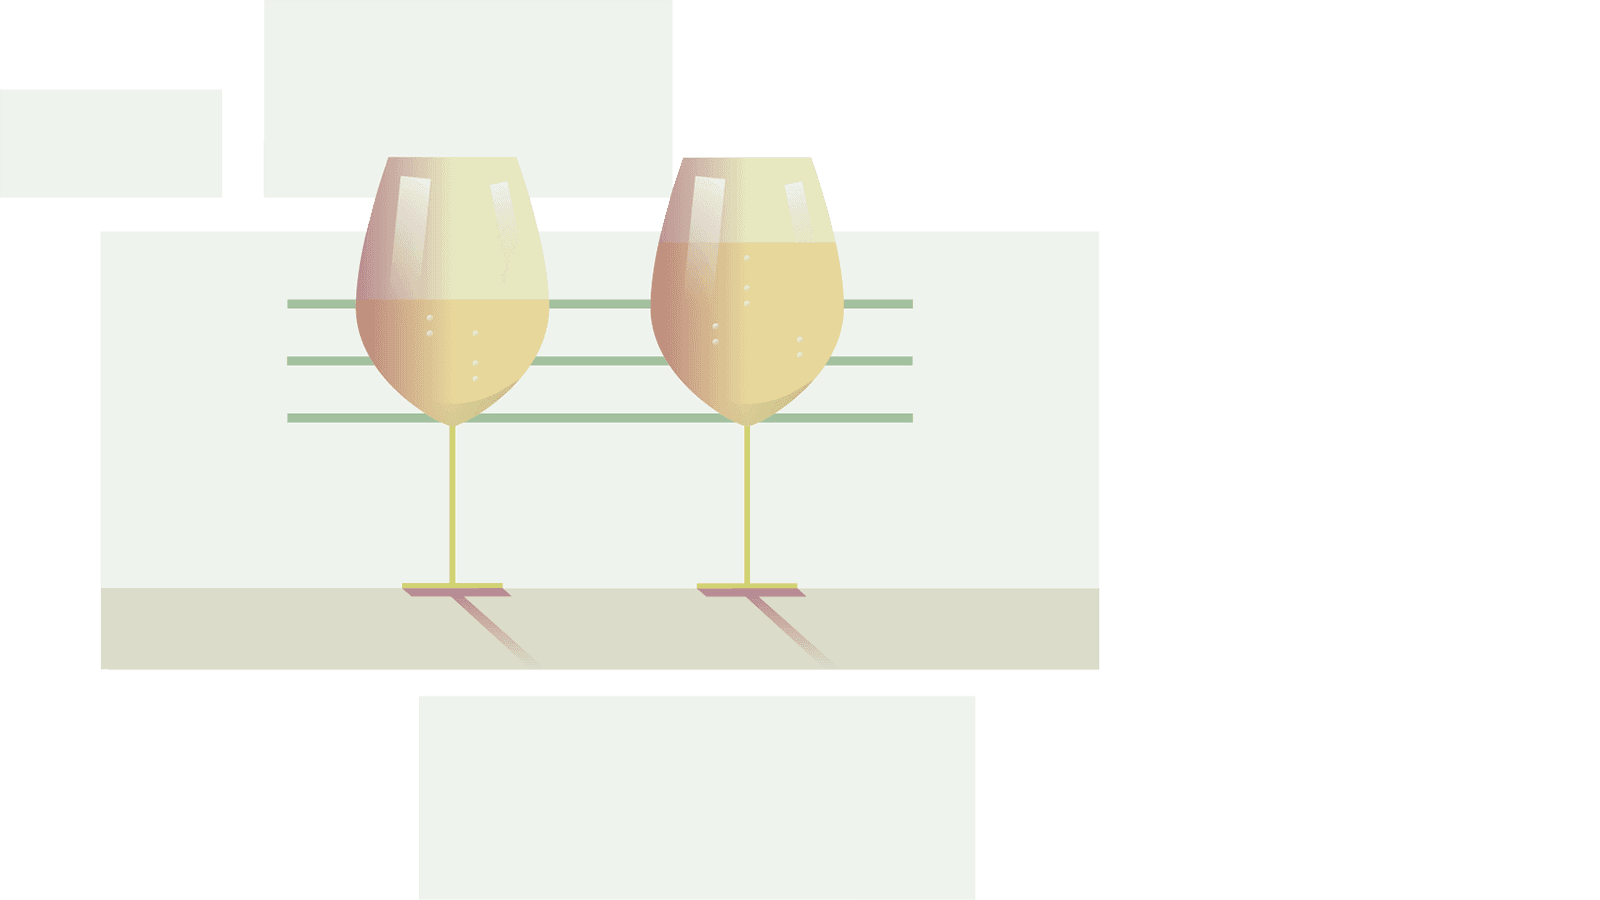 Imagen gráfica de dos copas de vino Una con una cantidad pequeña de vino y la otra con una cantidad más grande.